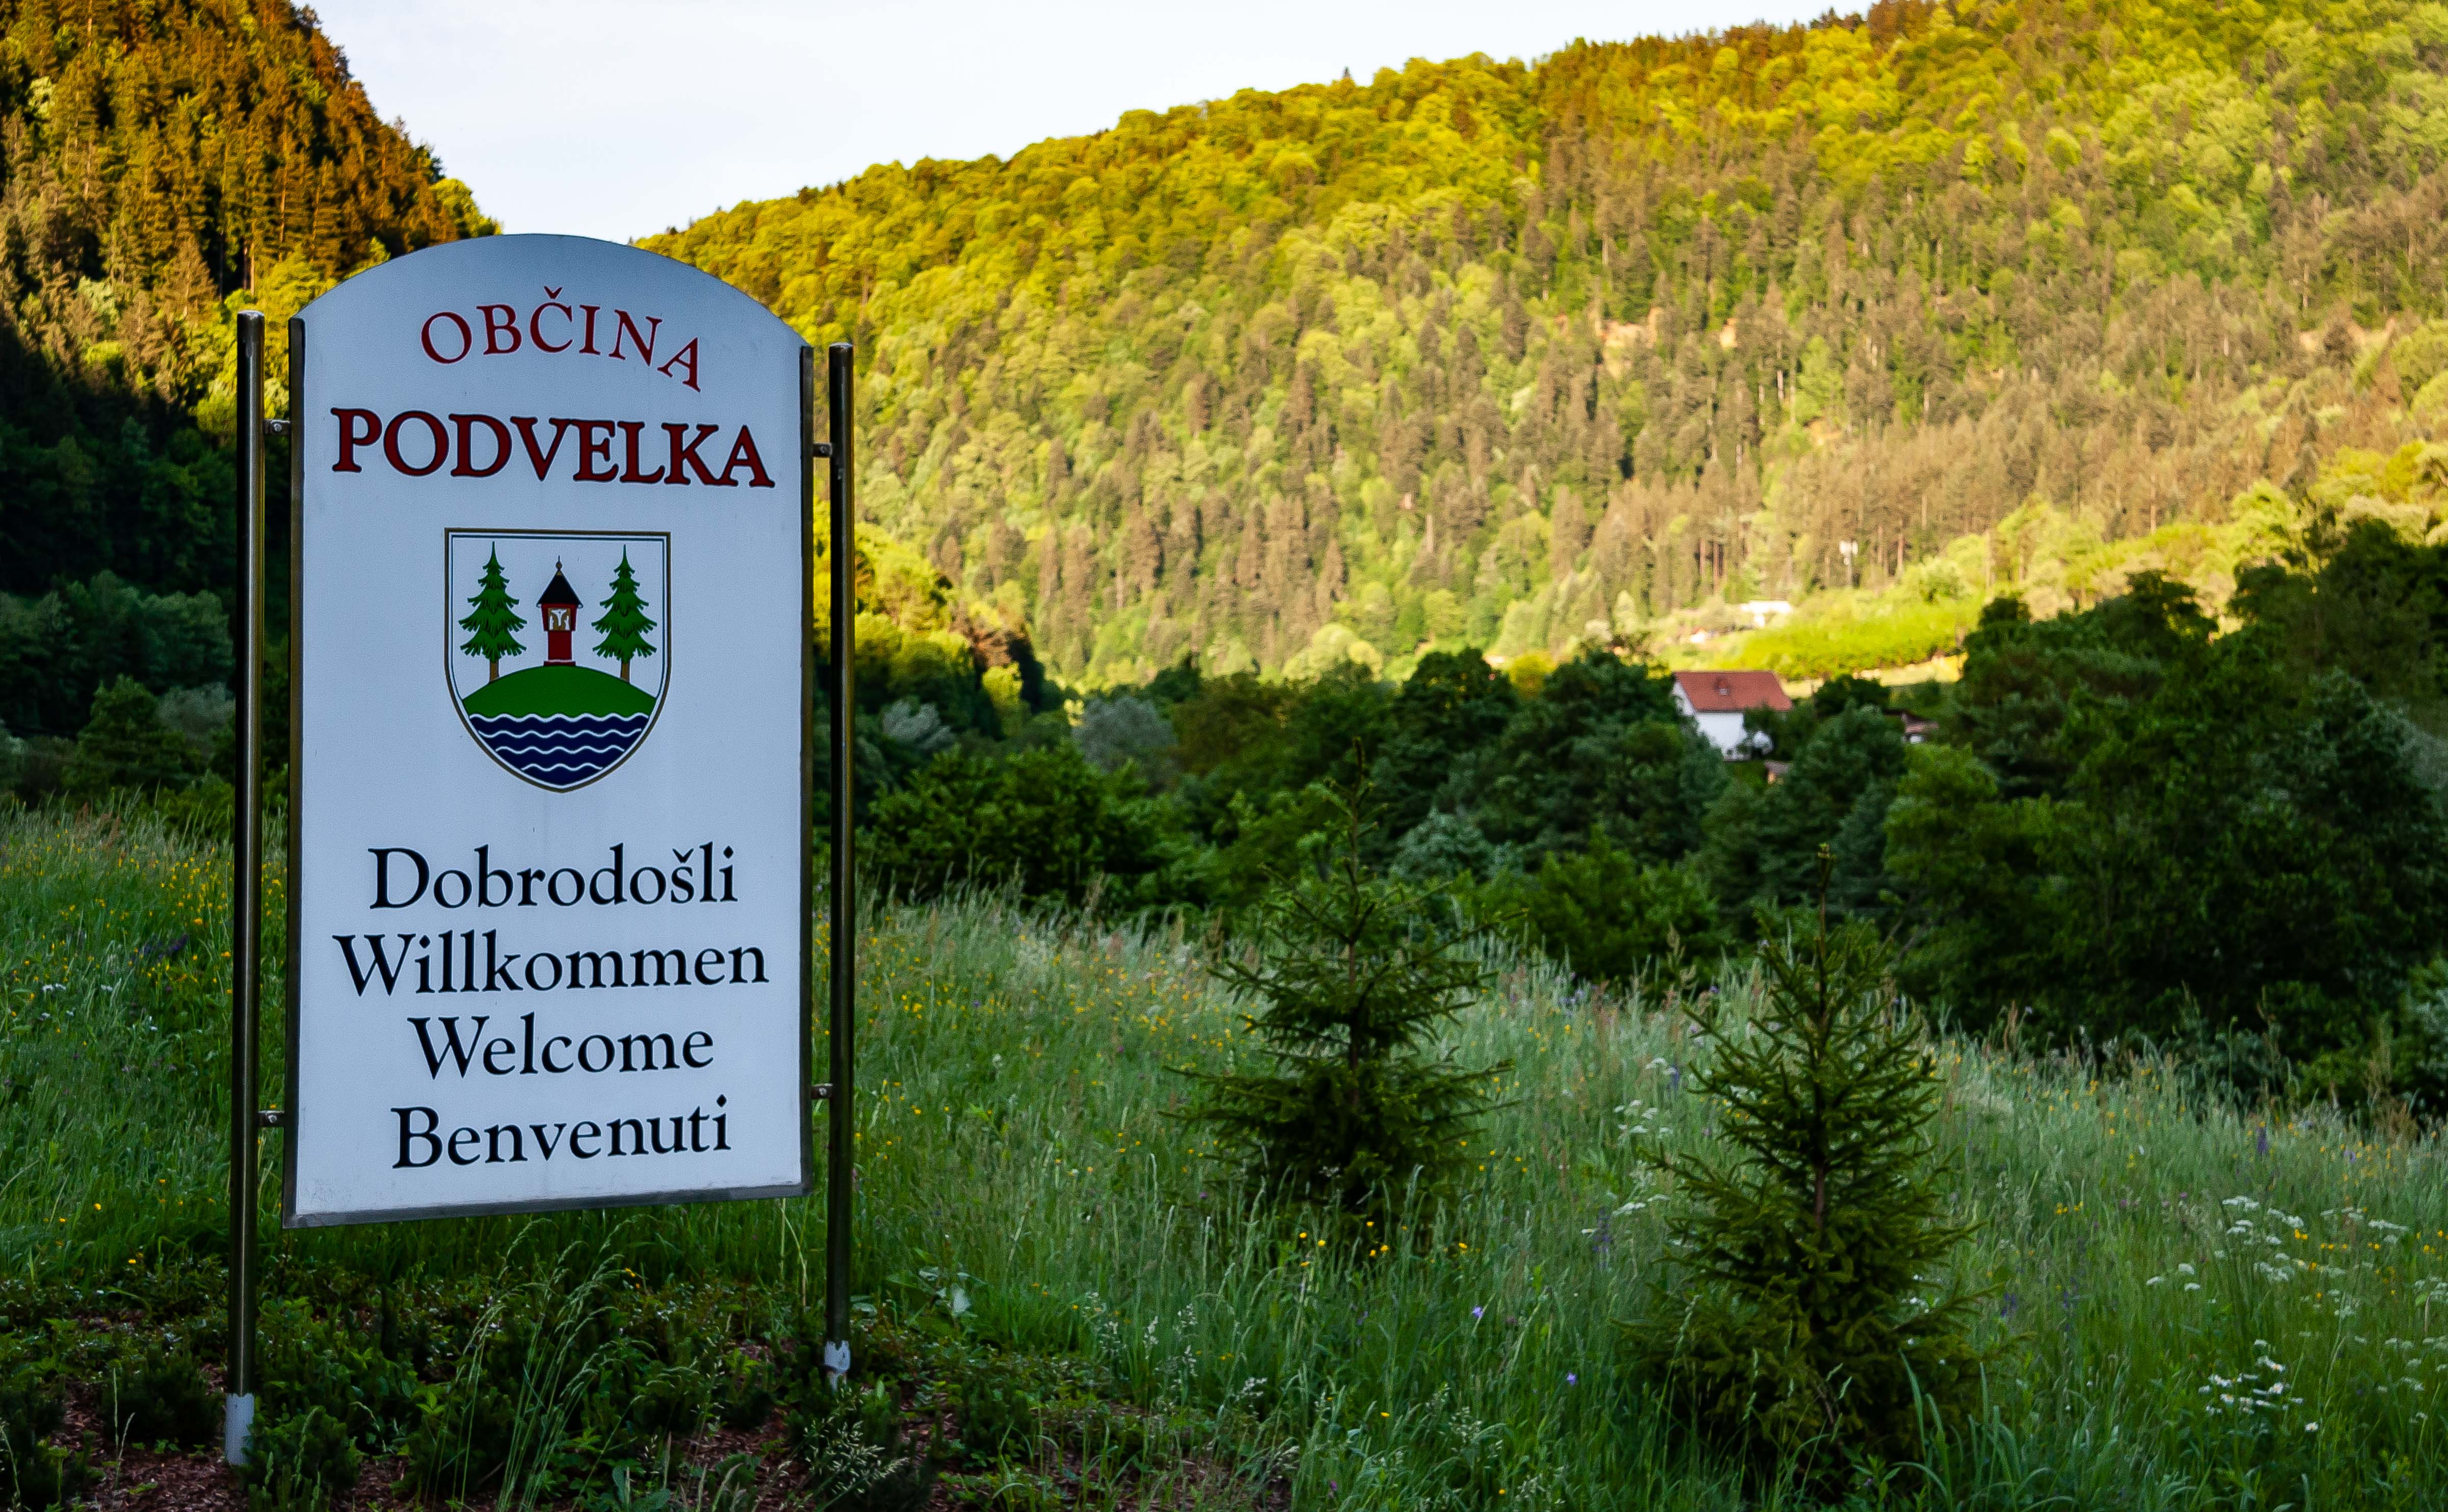 Slovenia, Podvelka Prov, Dobrodosli Podvelka Obcina, 2006, IMG 8689